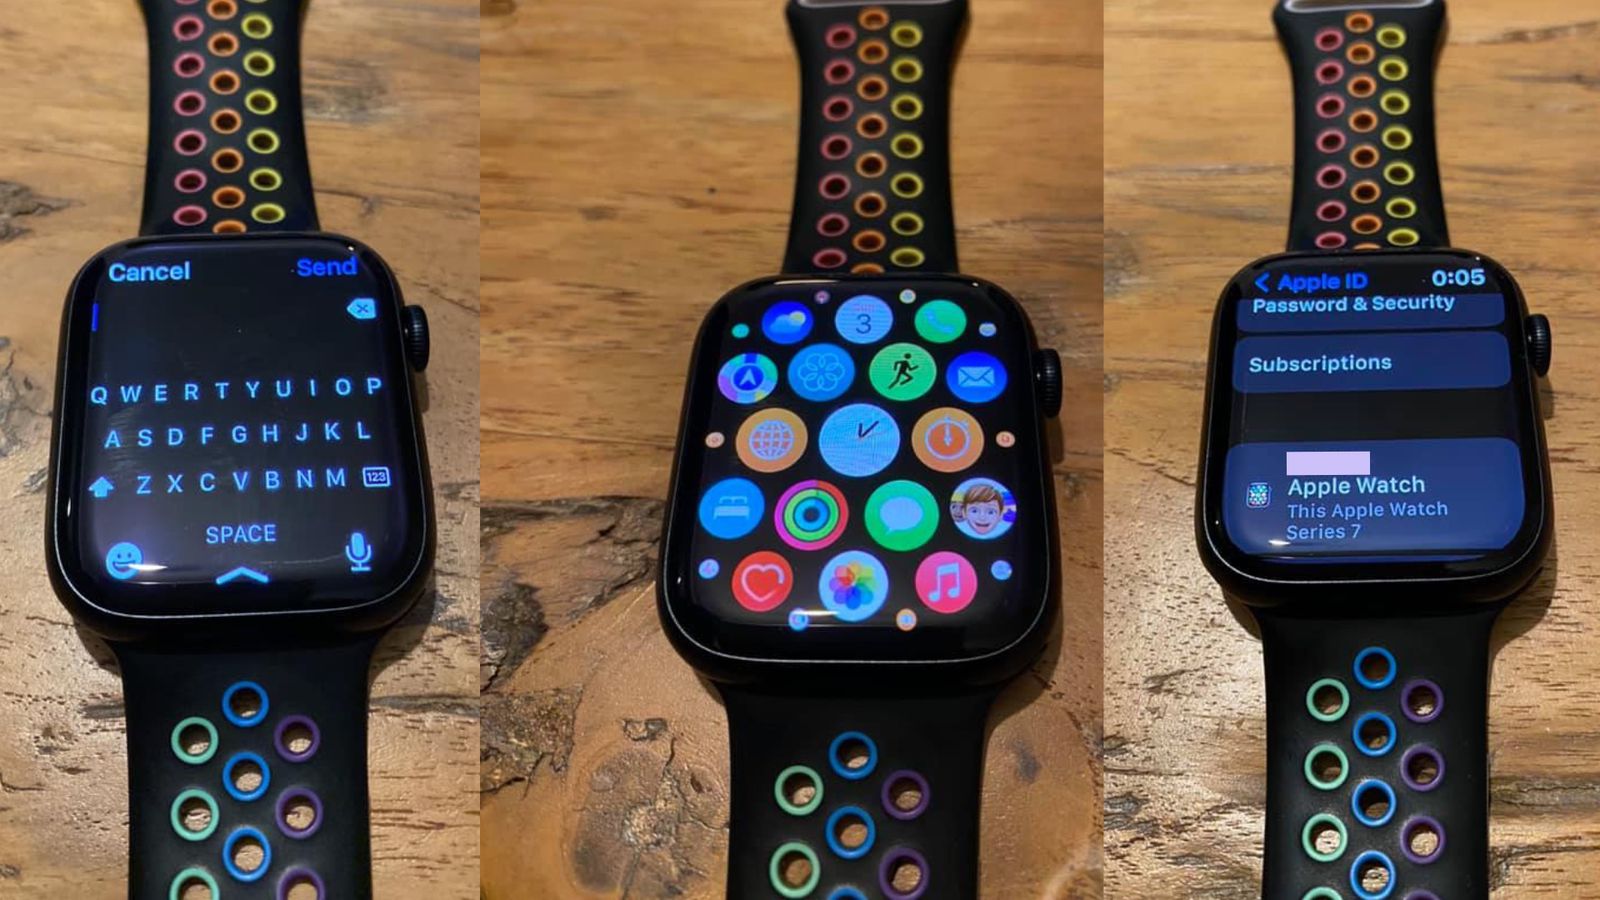 Live-Fotos der Apple Watch Series 7 sind online aufgetaucht, die Smartwatch bekommt tatsächlich ein Display mit sehr dünnen Rändern